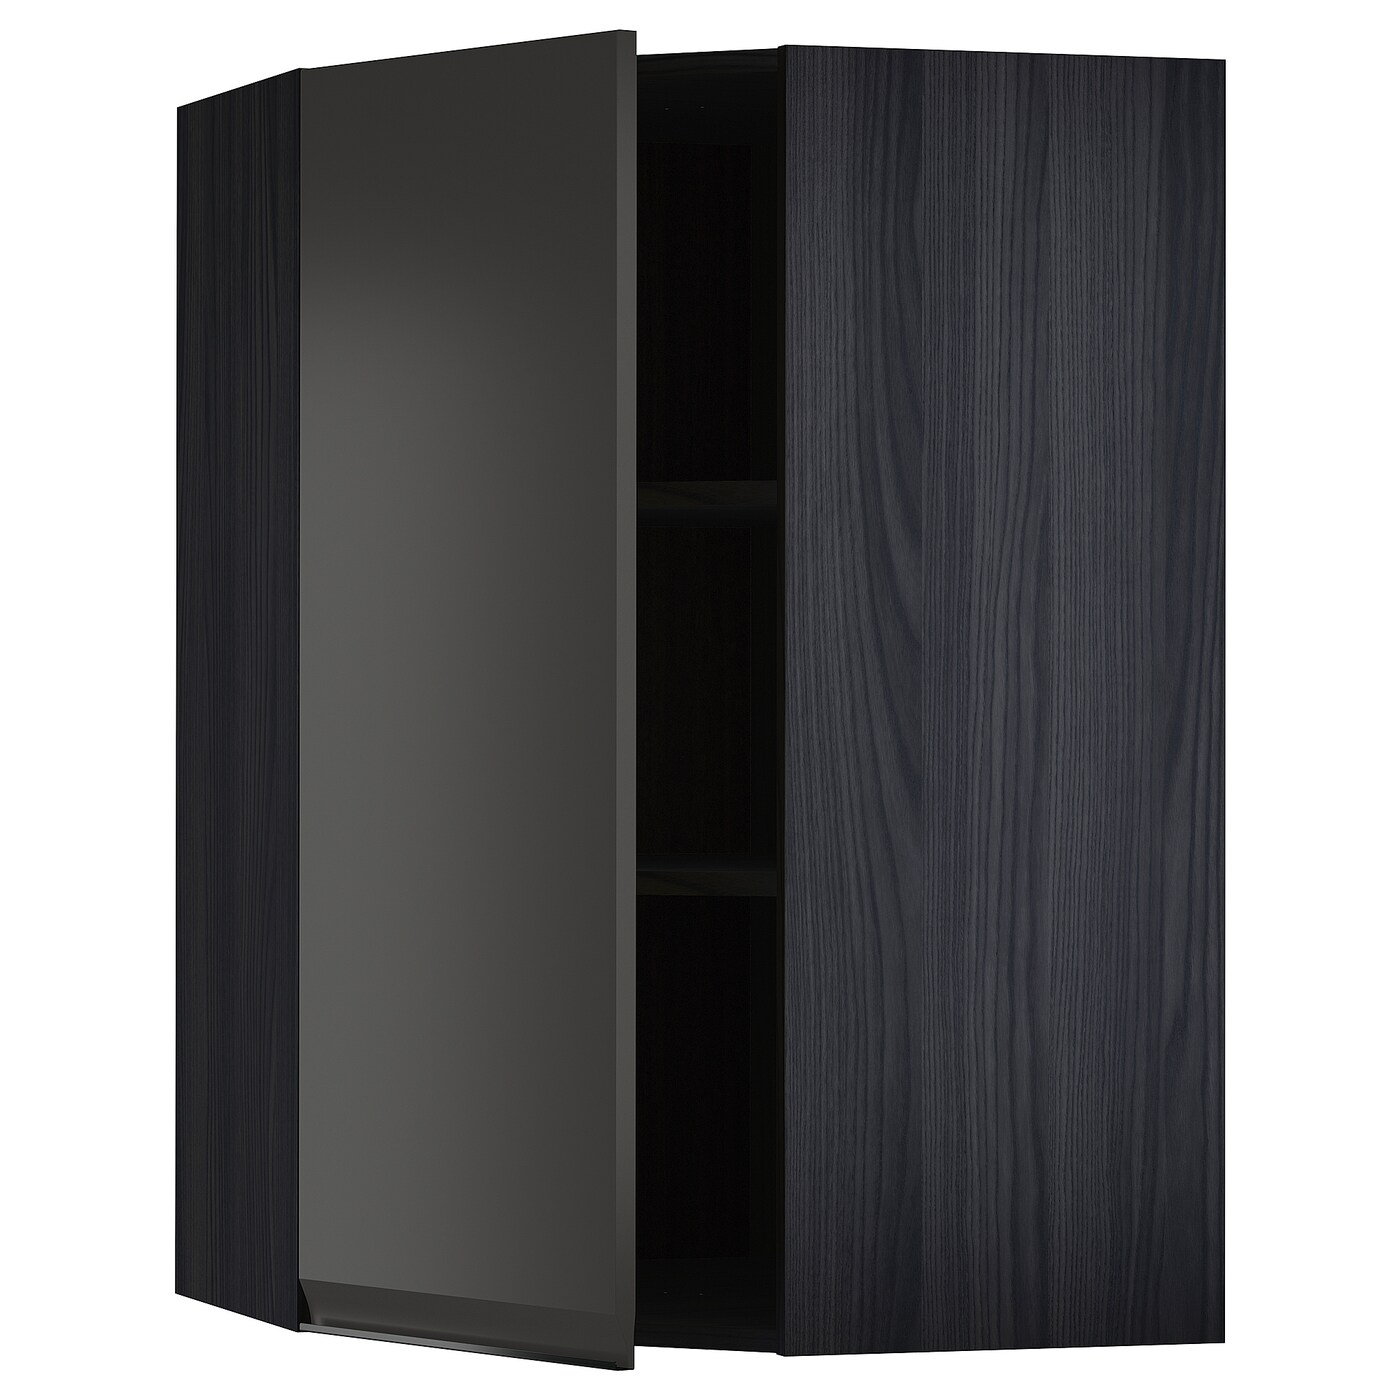 Угловой навесной шкаф с полками - METOD  IKEA/  МЕТОД ИКЕА, 100х68 см, черный